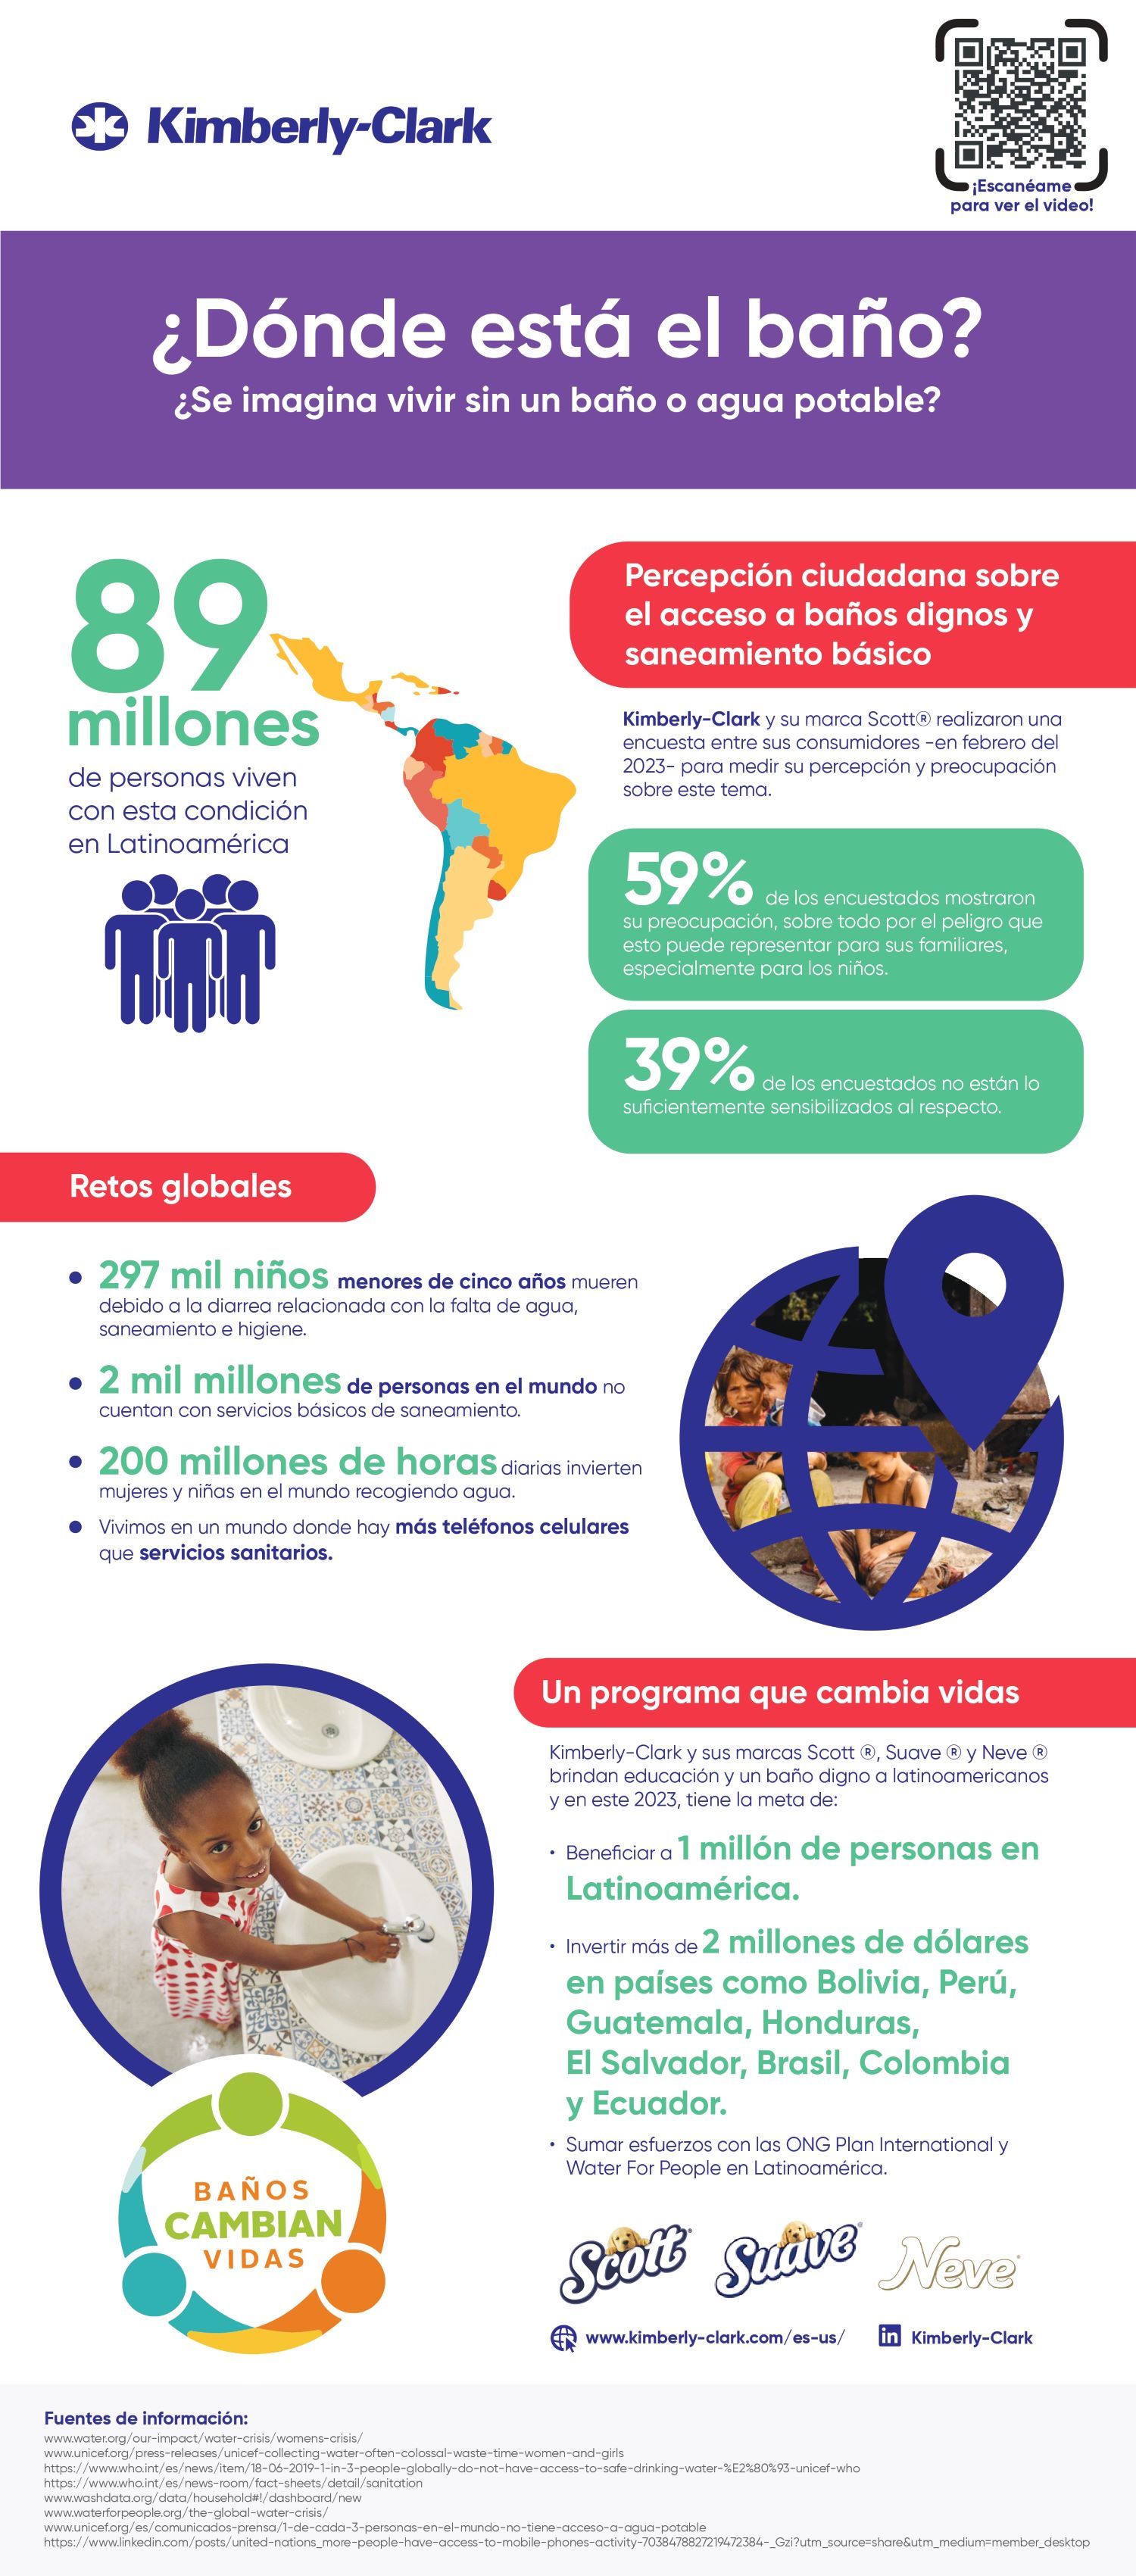 Kimberly-Clark presenta la campaña ¿Dónde está el baño?, para sensibilizar a las personas sobre la falta de acceso a un baño digno en Latinoamérica